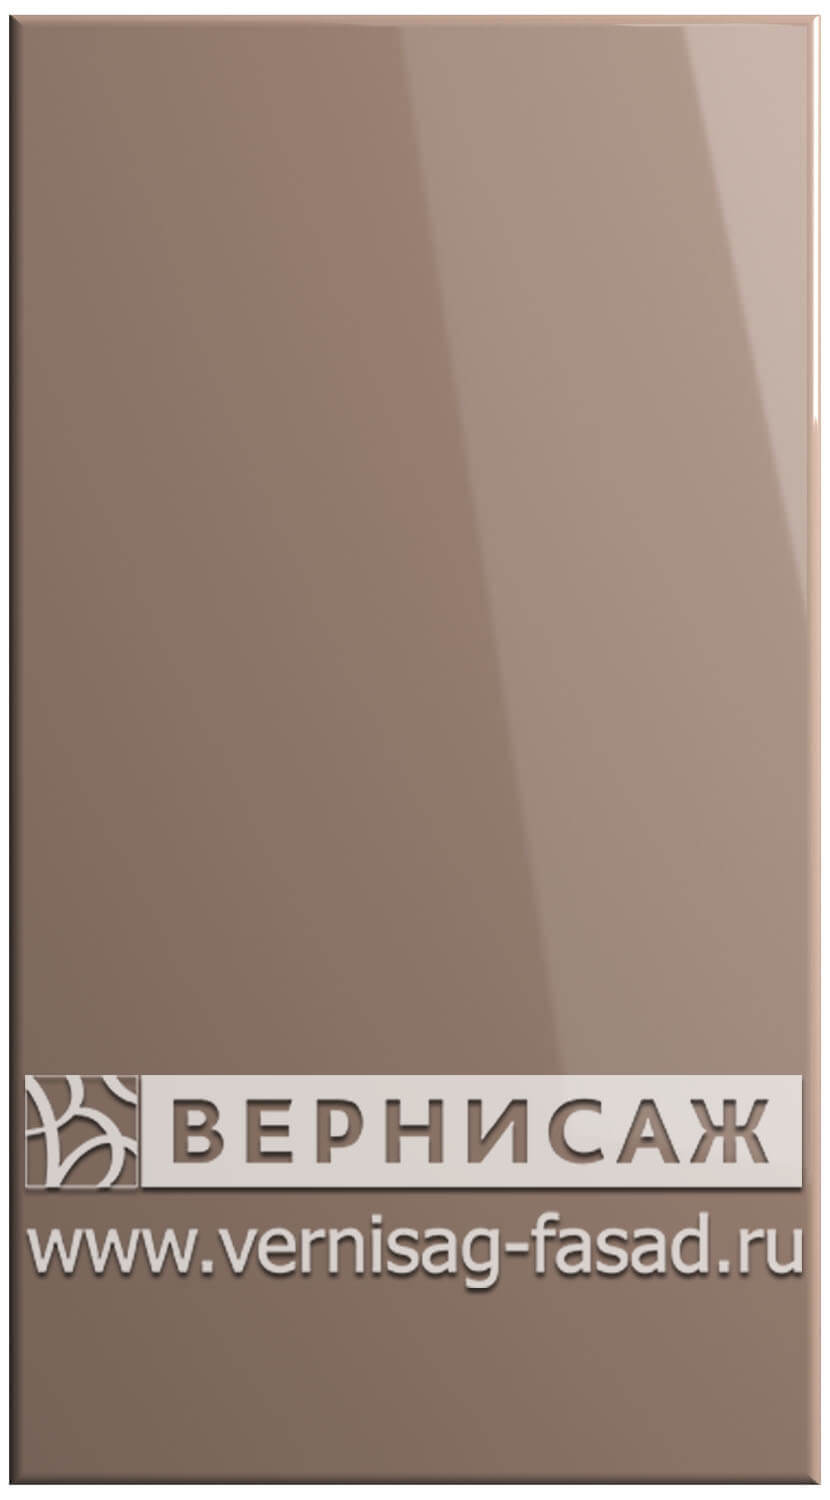 Фасады в пленке ПВХ, Фрезеровка № 15, цвет Мокко глянец